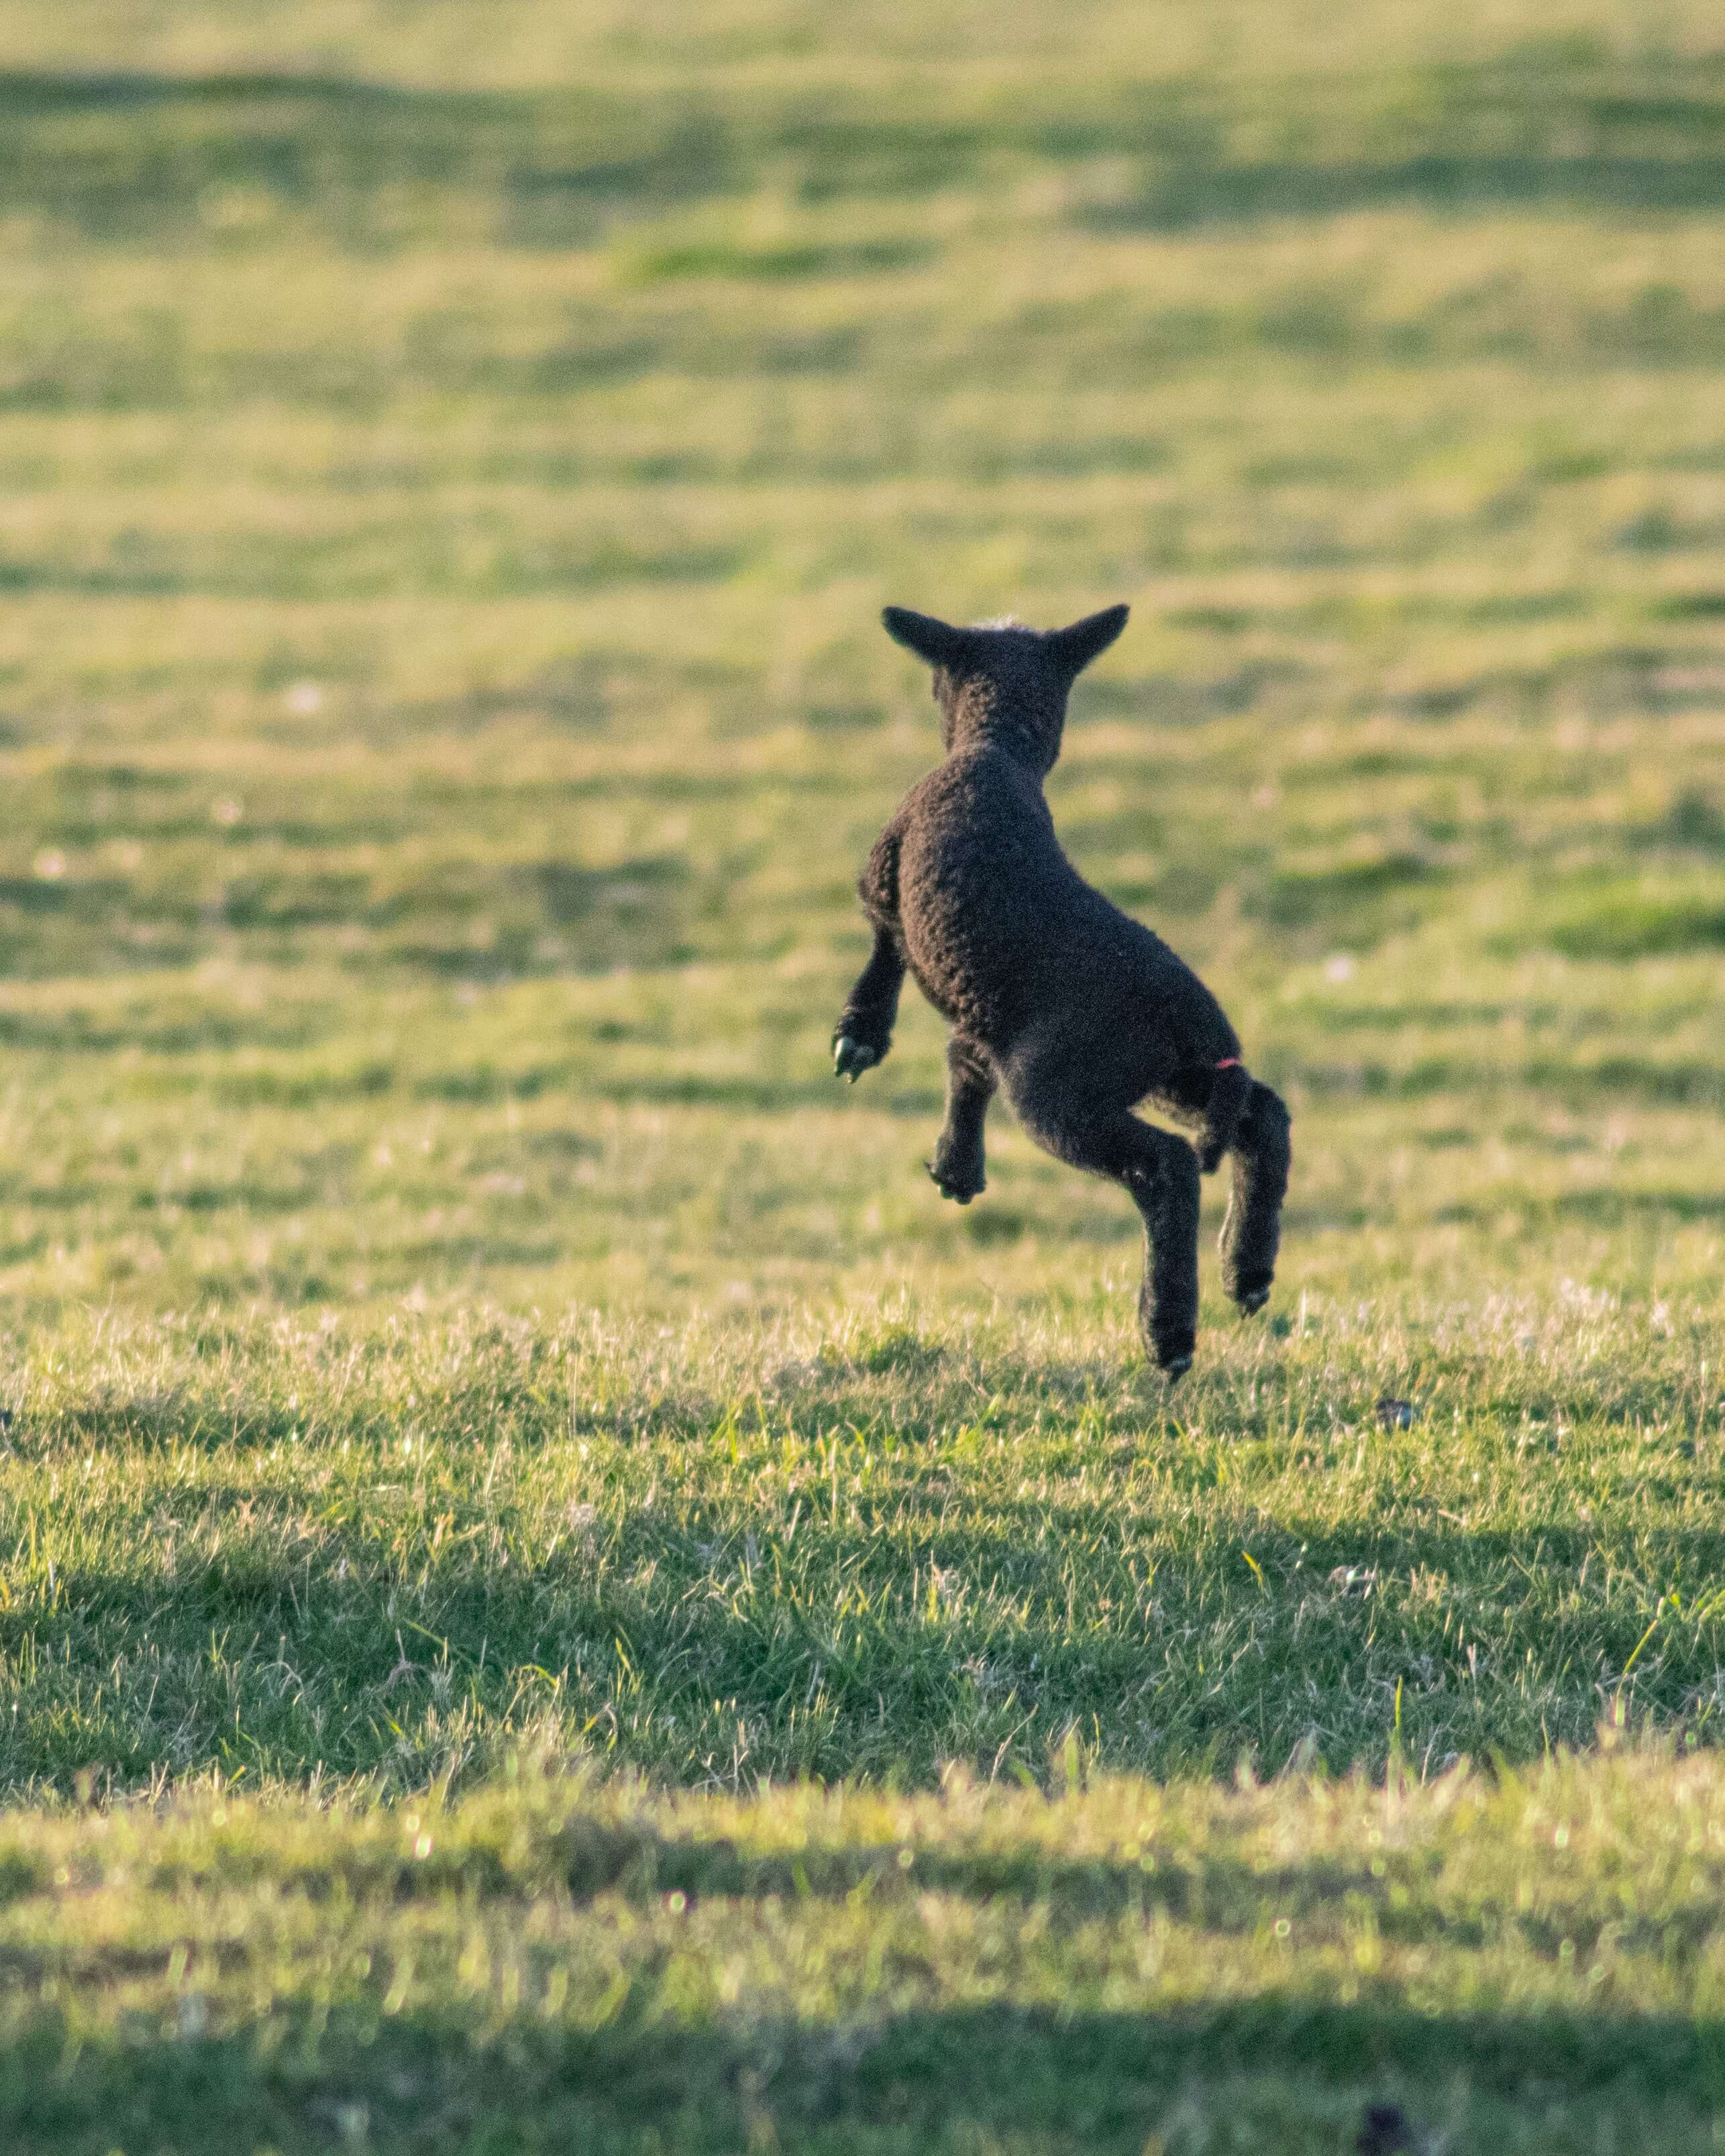 양이 펄쩍펄쩍 뛰고 있는 사진